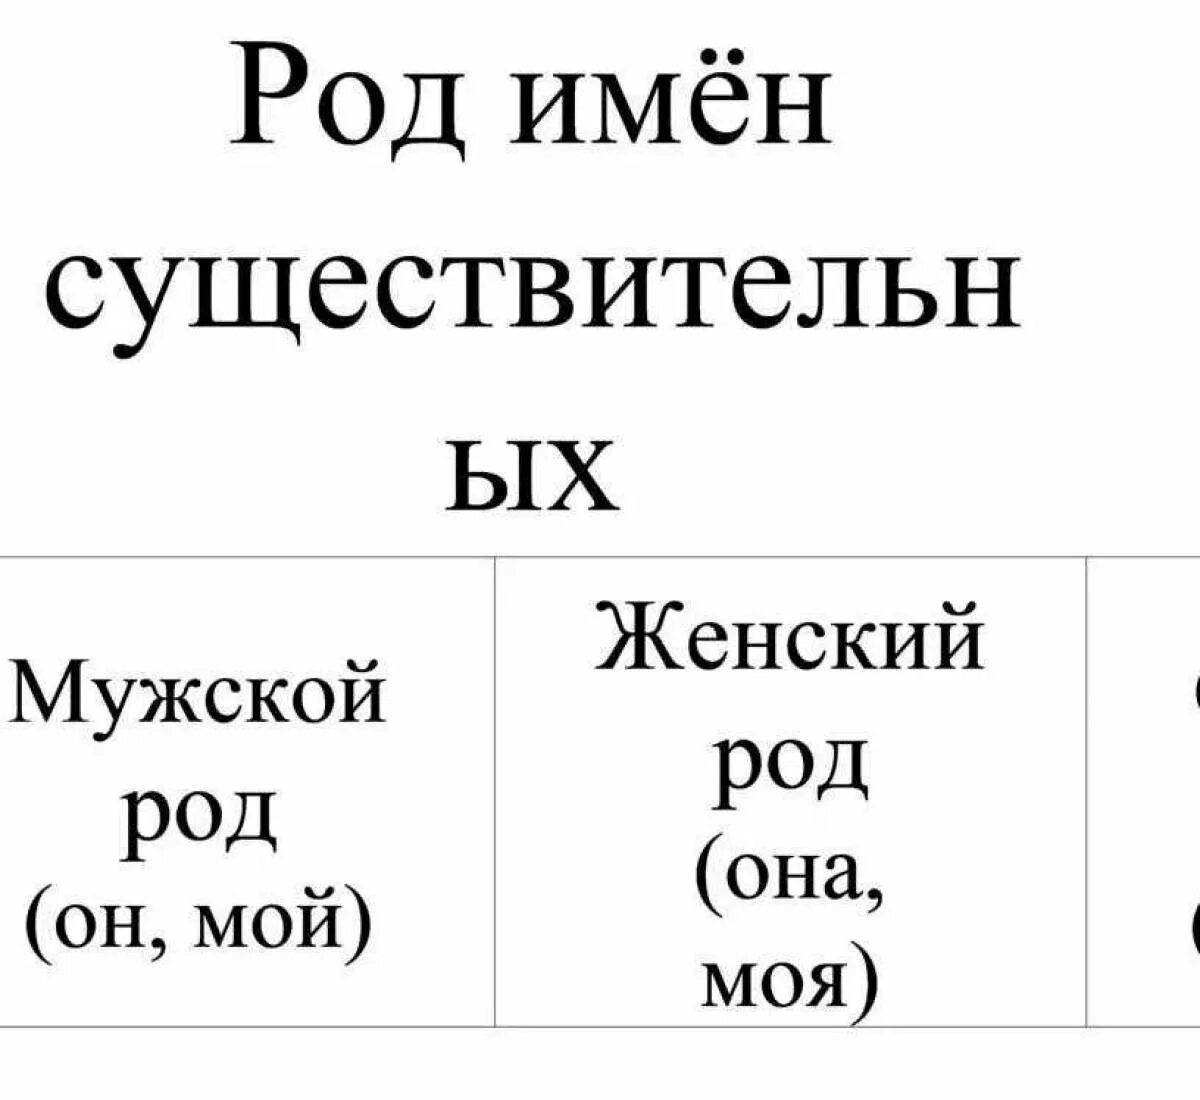 Таблица имени существительного 3 класс. Род в русском языке таблица имен существительных. Таблица по русскому языку 3 класс род имен существительных. Правило по русскому языку род имён существительных. Правило определения рода имен существительных.